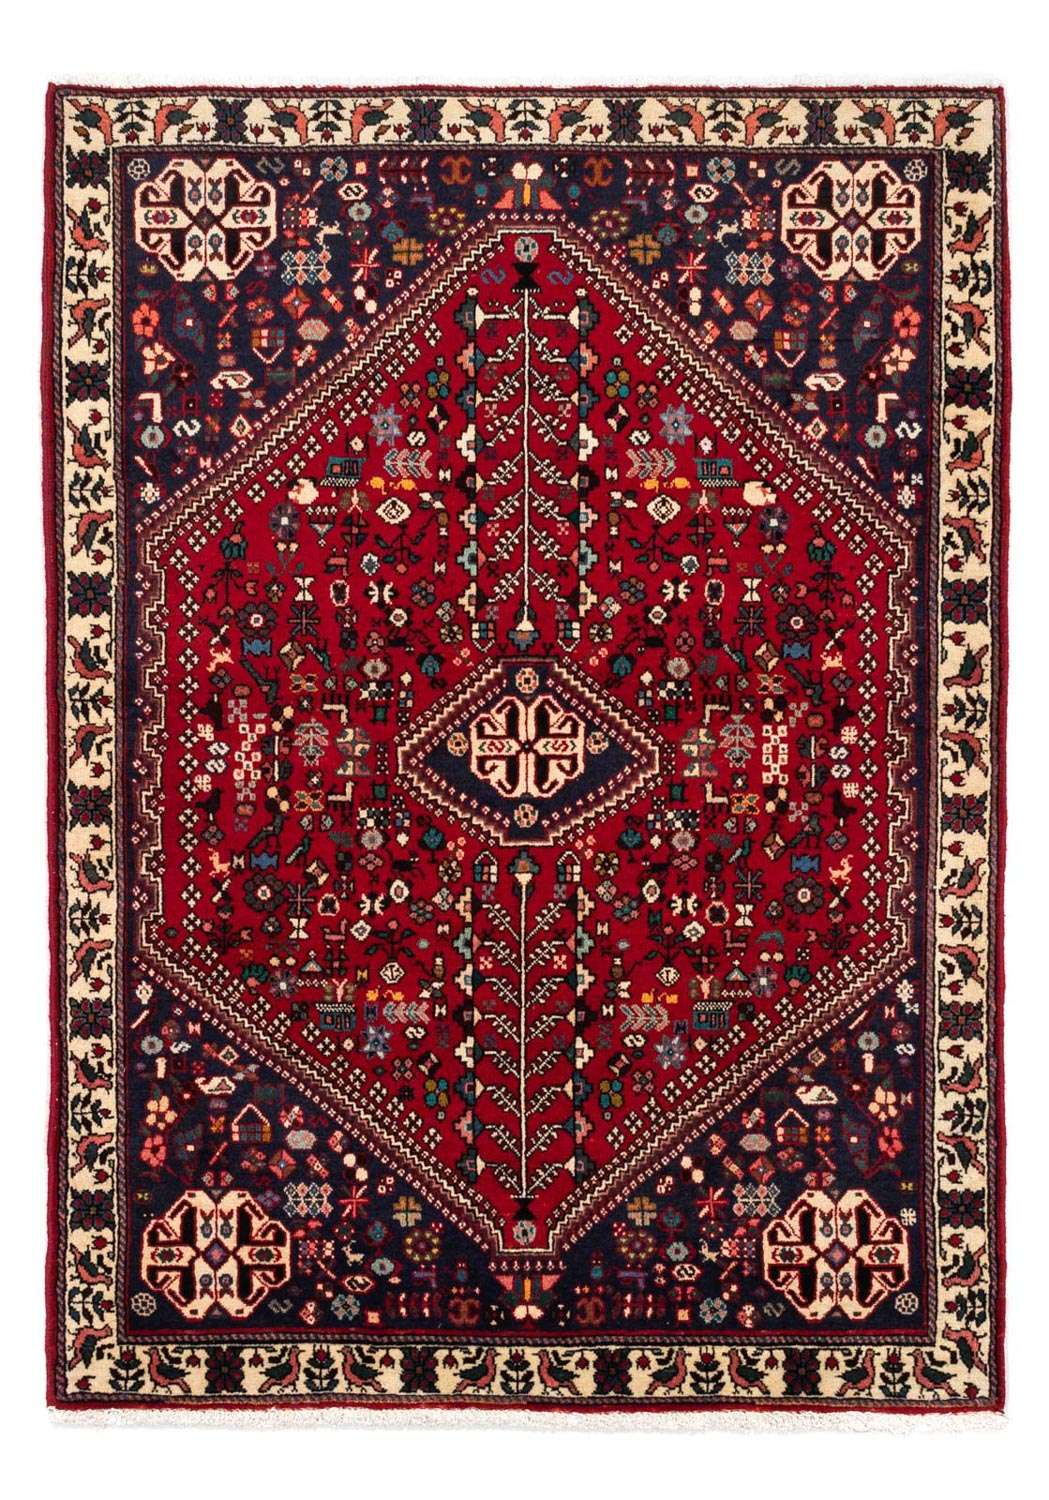 Persisk teppe - Nomadisk - 154 x 107 cm - mørk rød